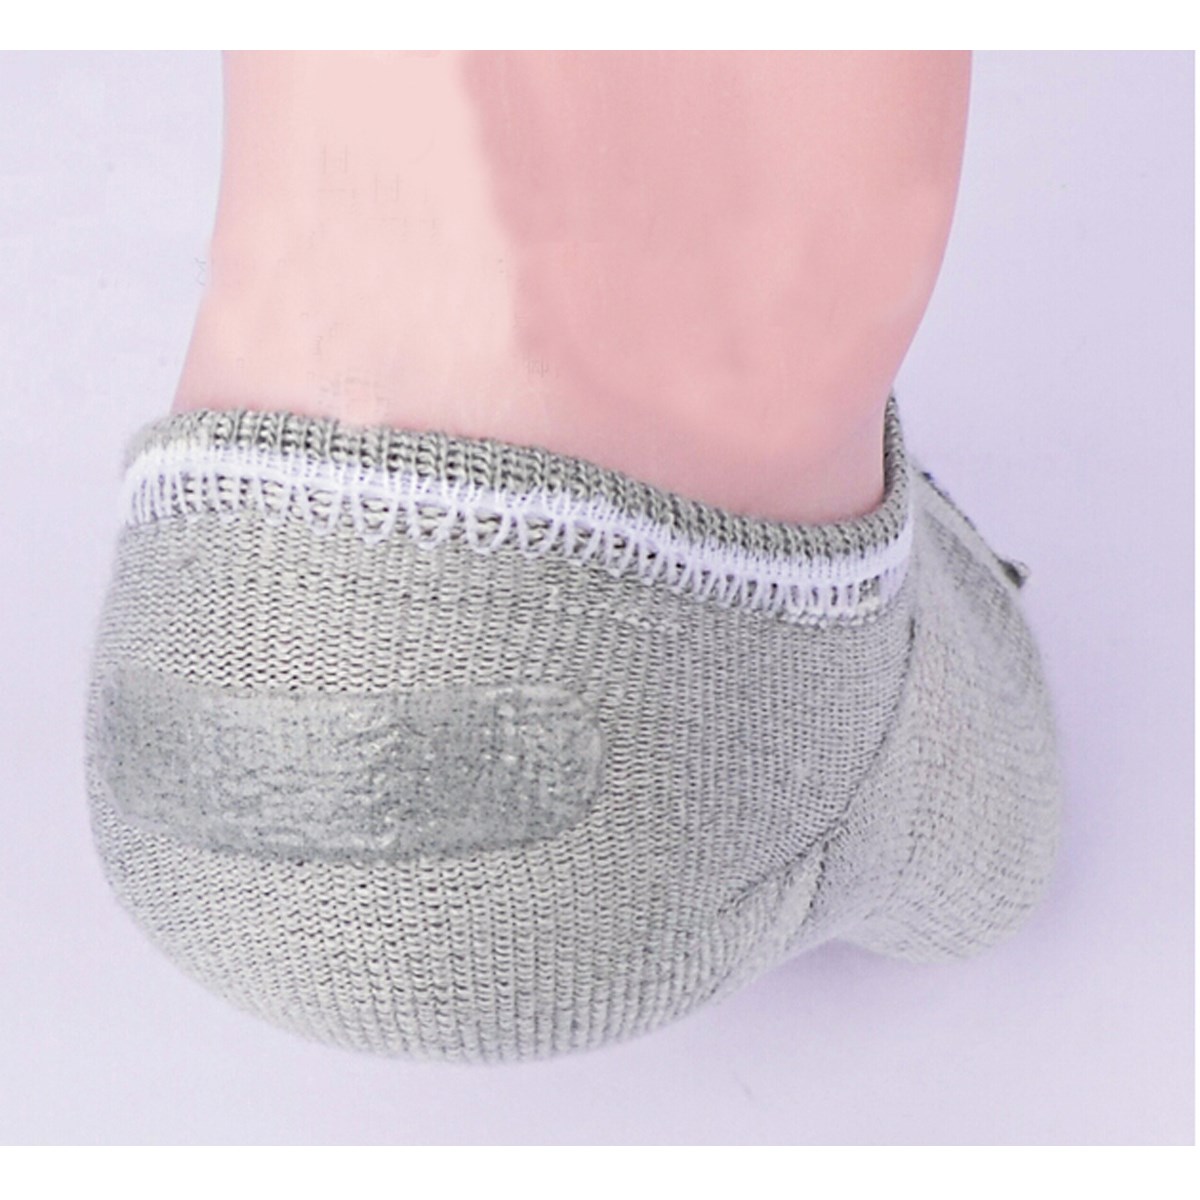 10 Kinds Style Casual Socks For Male Breathable Cotton Men Non Slip Short Bamboo Fiber Socks